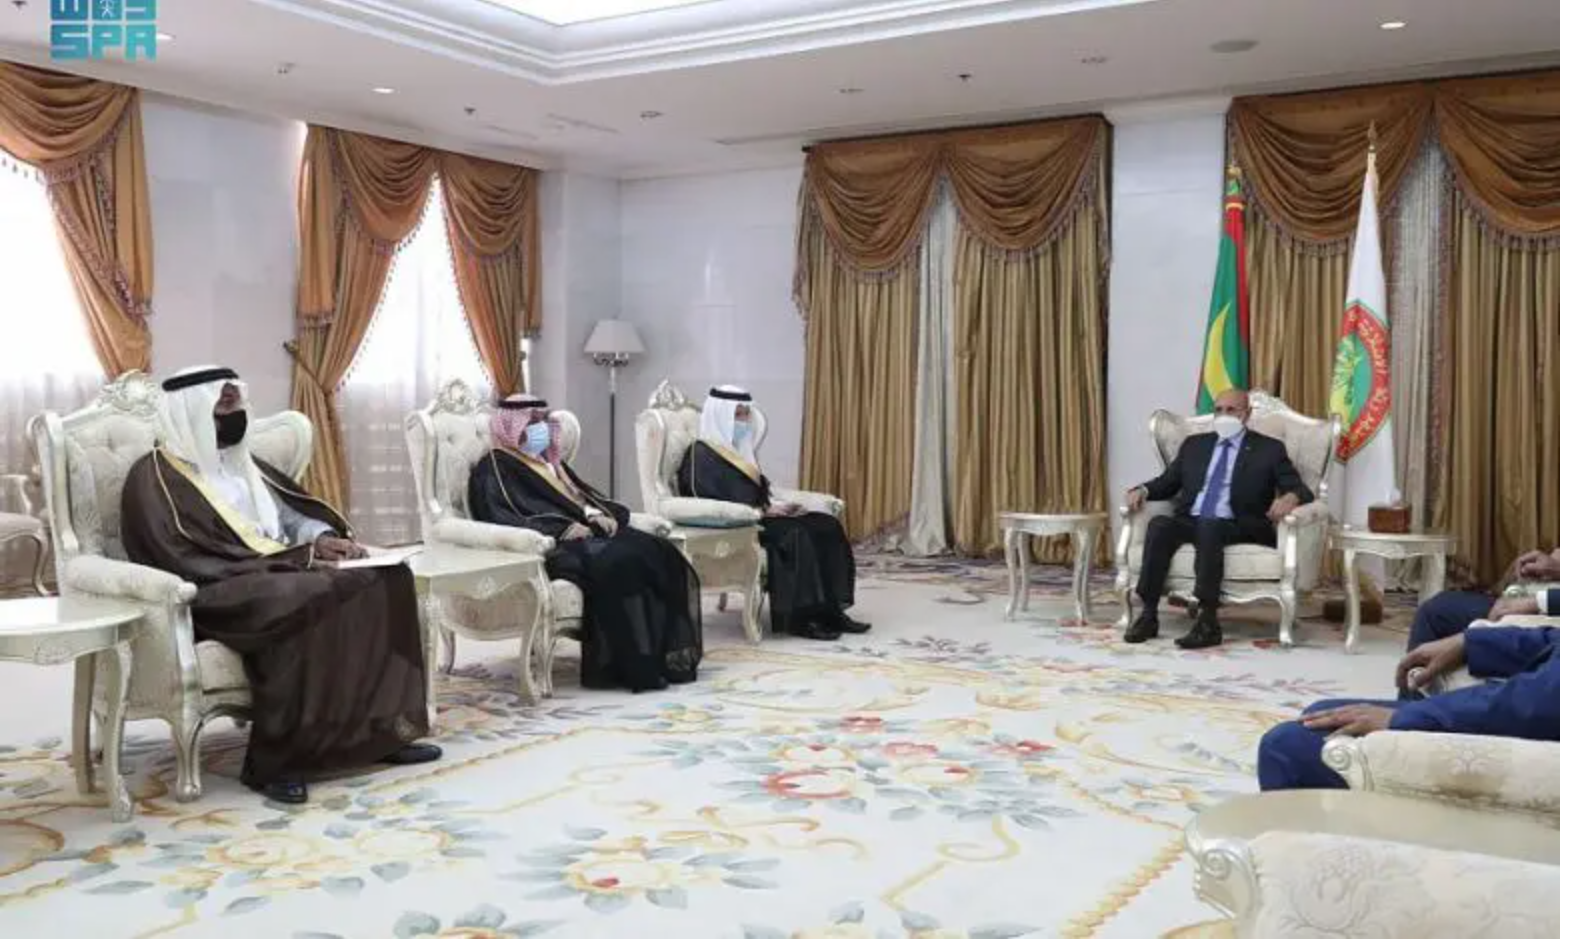 Le président Ghazouani soutient la candidature de l’Arabie saoudite pour l’organisation de l’expo 2030